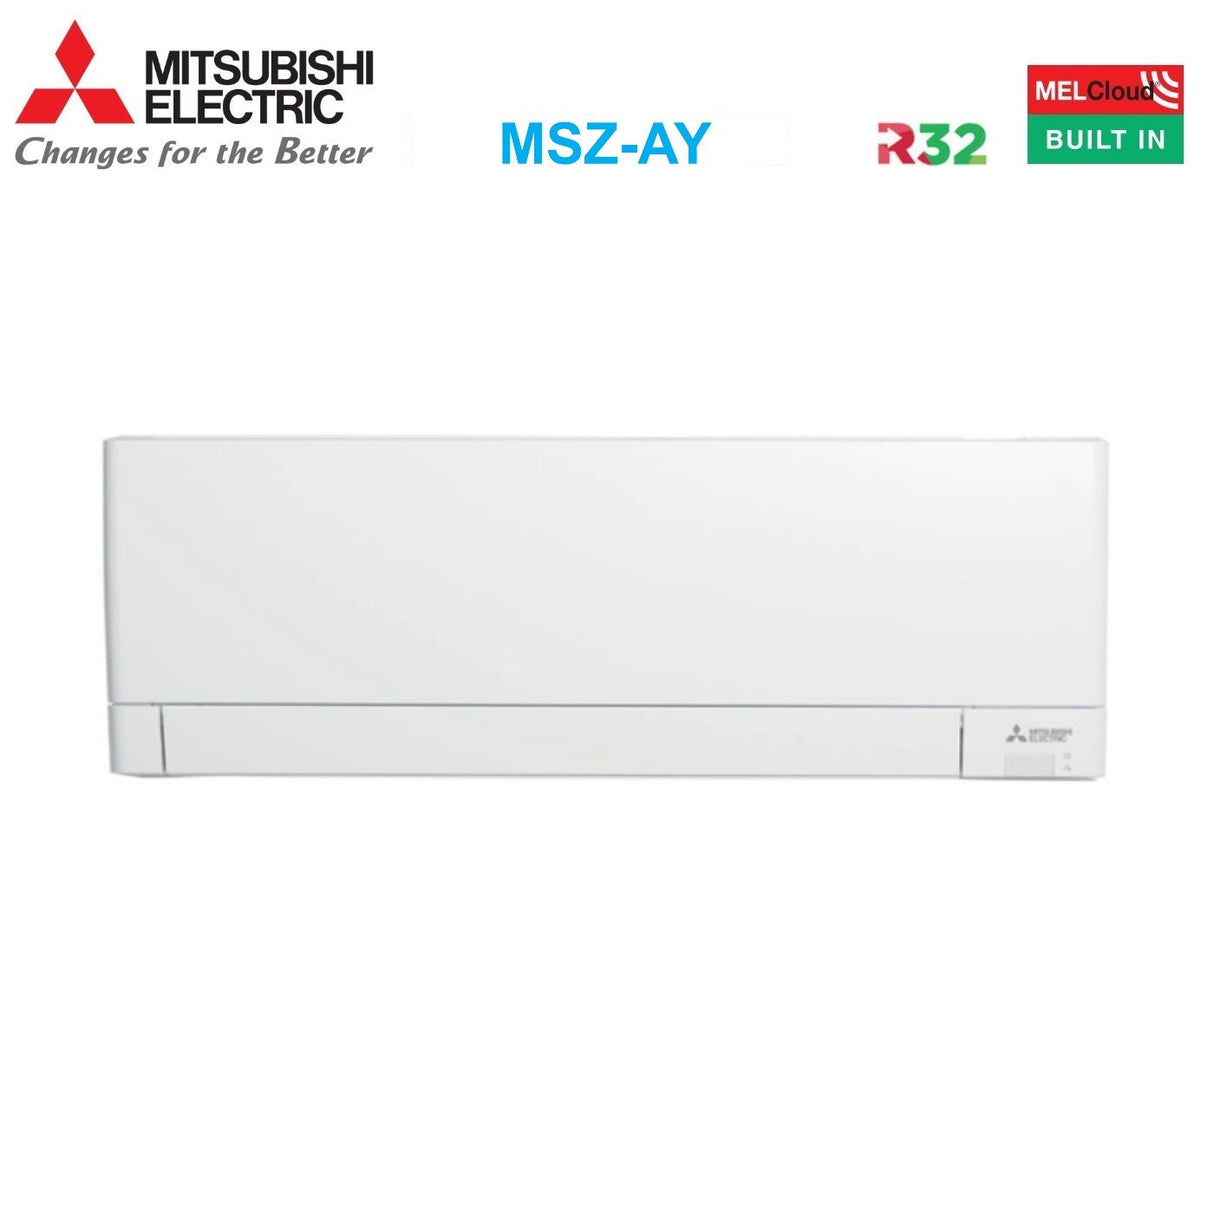 immagine-3-mitsubishi-electric-area-occasioni-climatizzatore-condizionatore-mitsubishi-electric-dual-split-inverter-linea-plus-serie-msz-ay-912-con-mxz-2f42vf-r-32-wi-fi-integrato-900012000